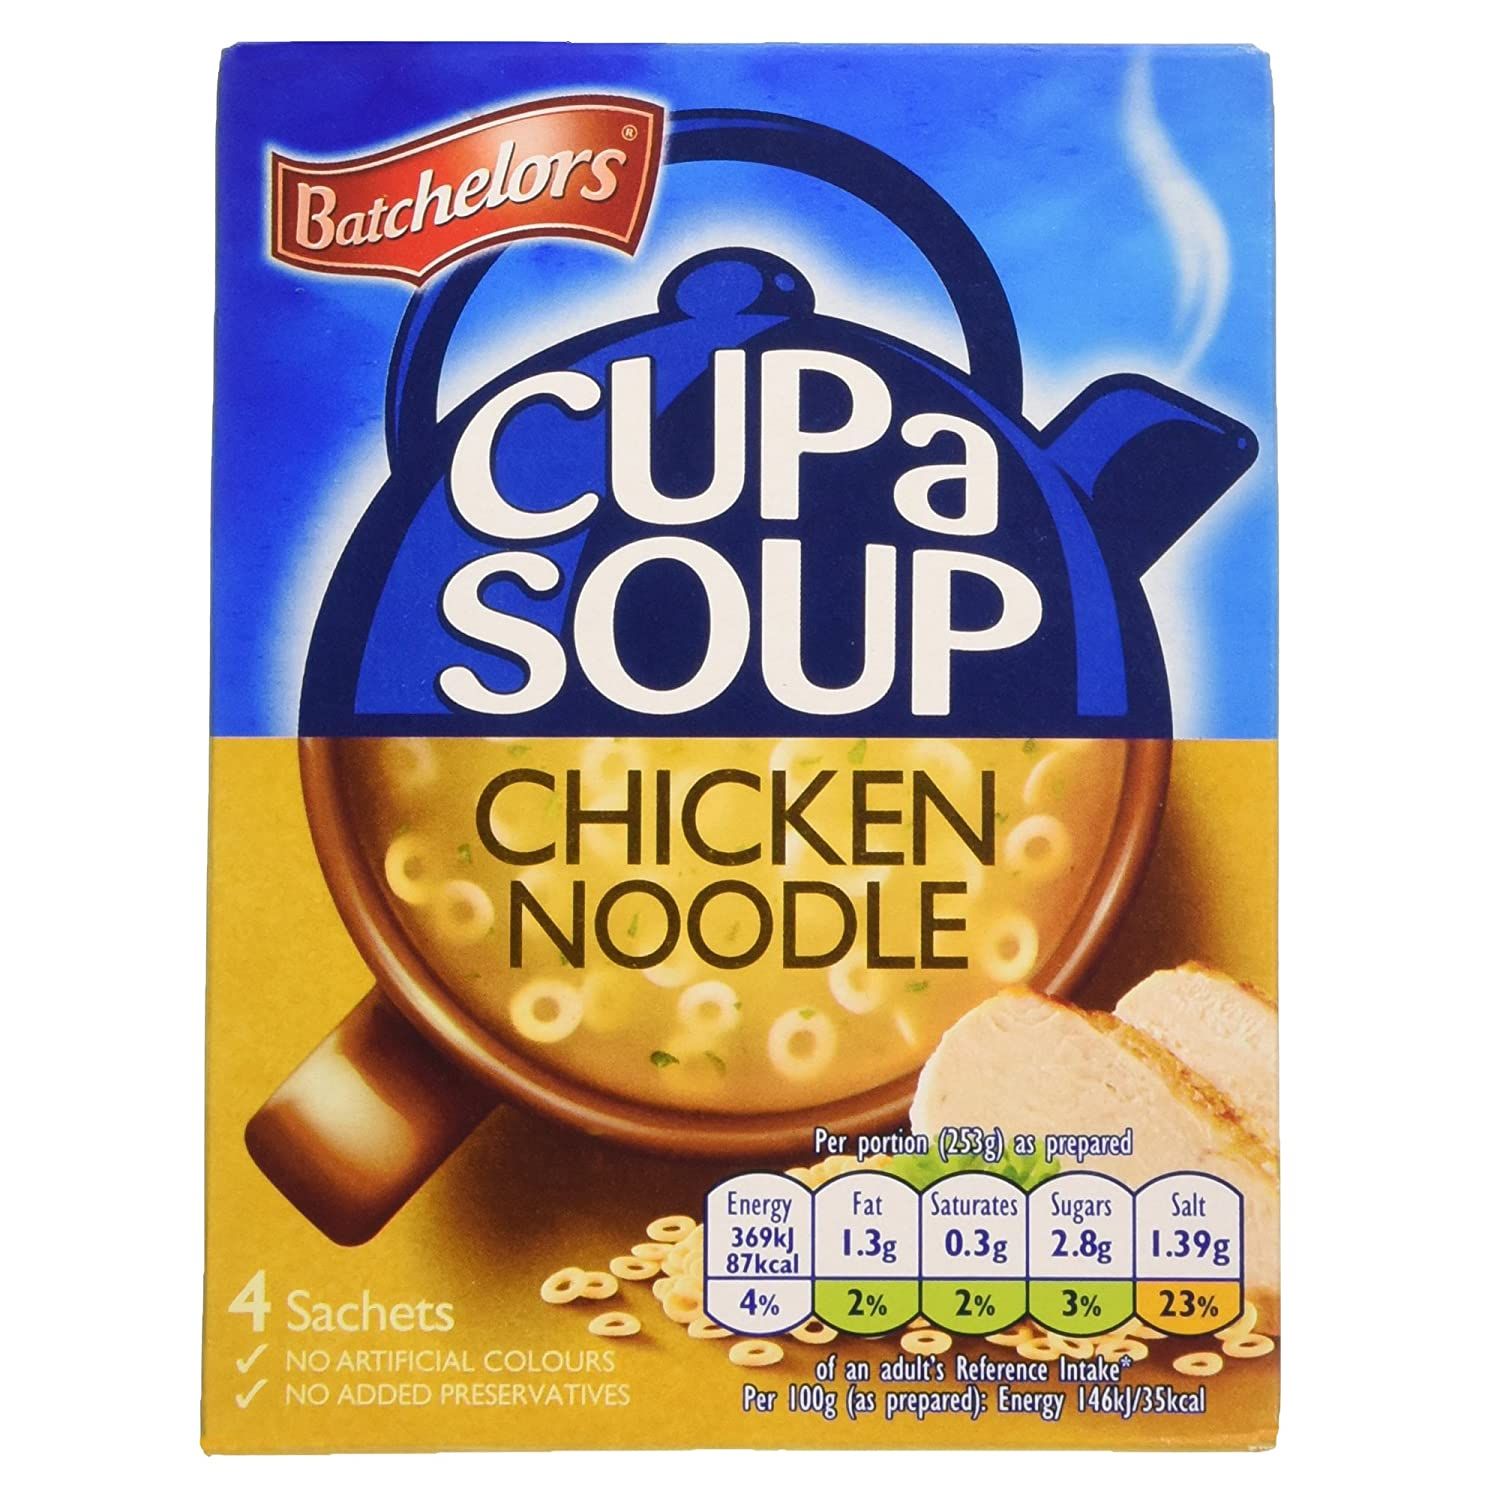 Batchelor's Cup A Soup Chicken Noodle Image